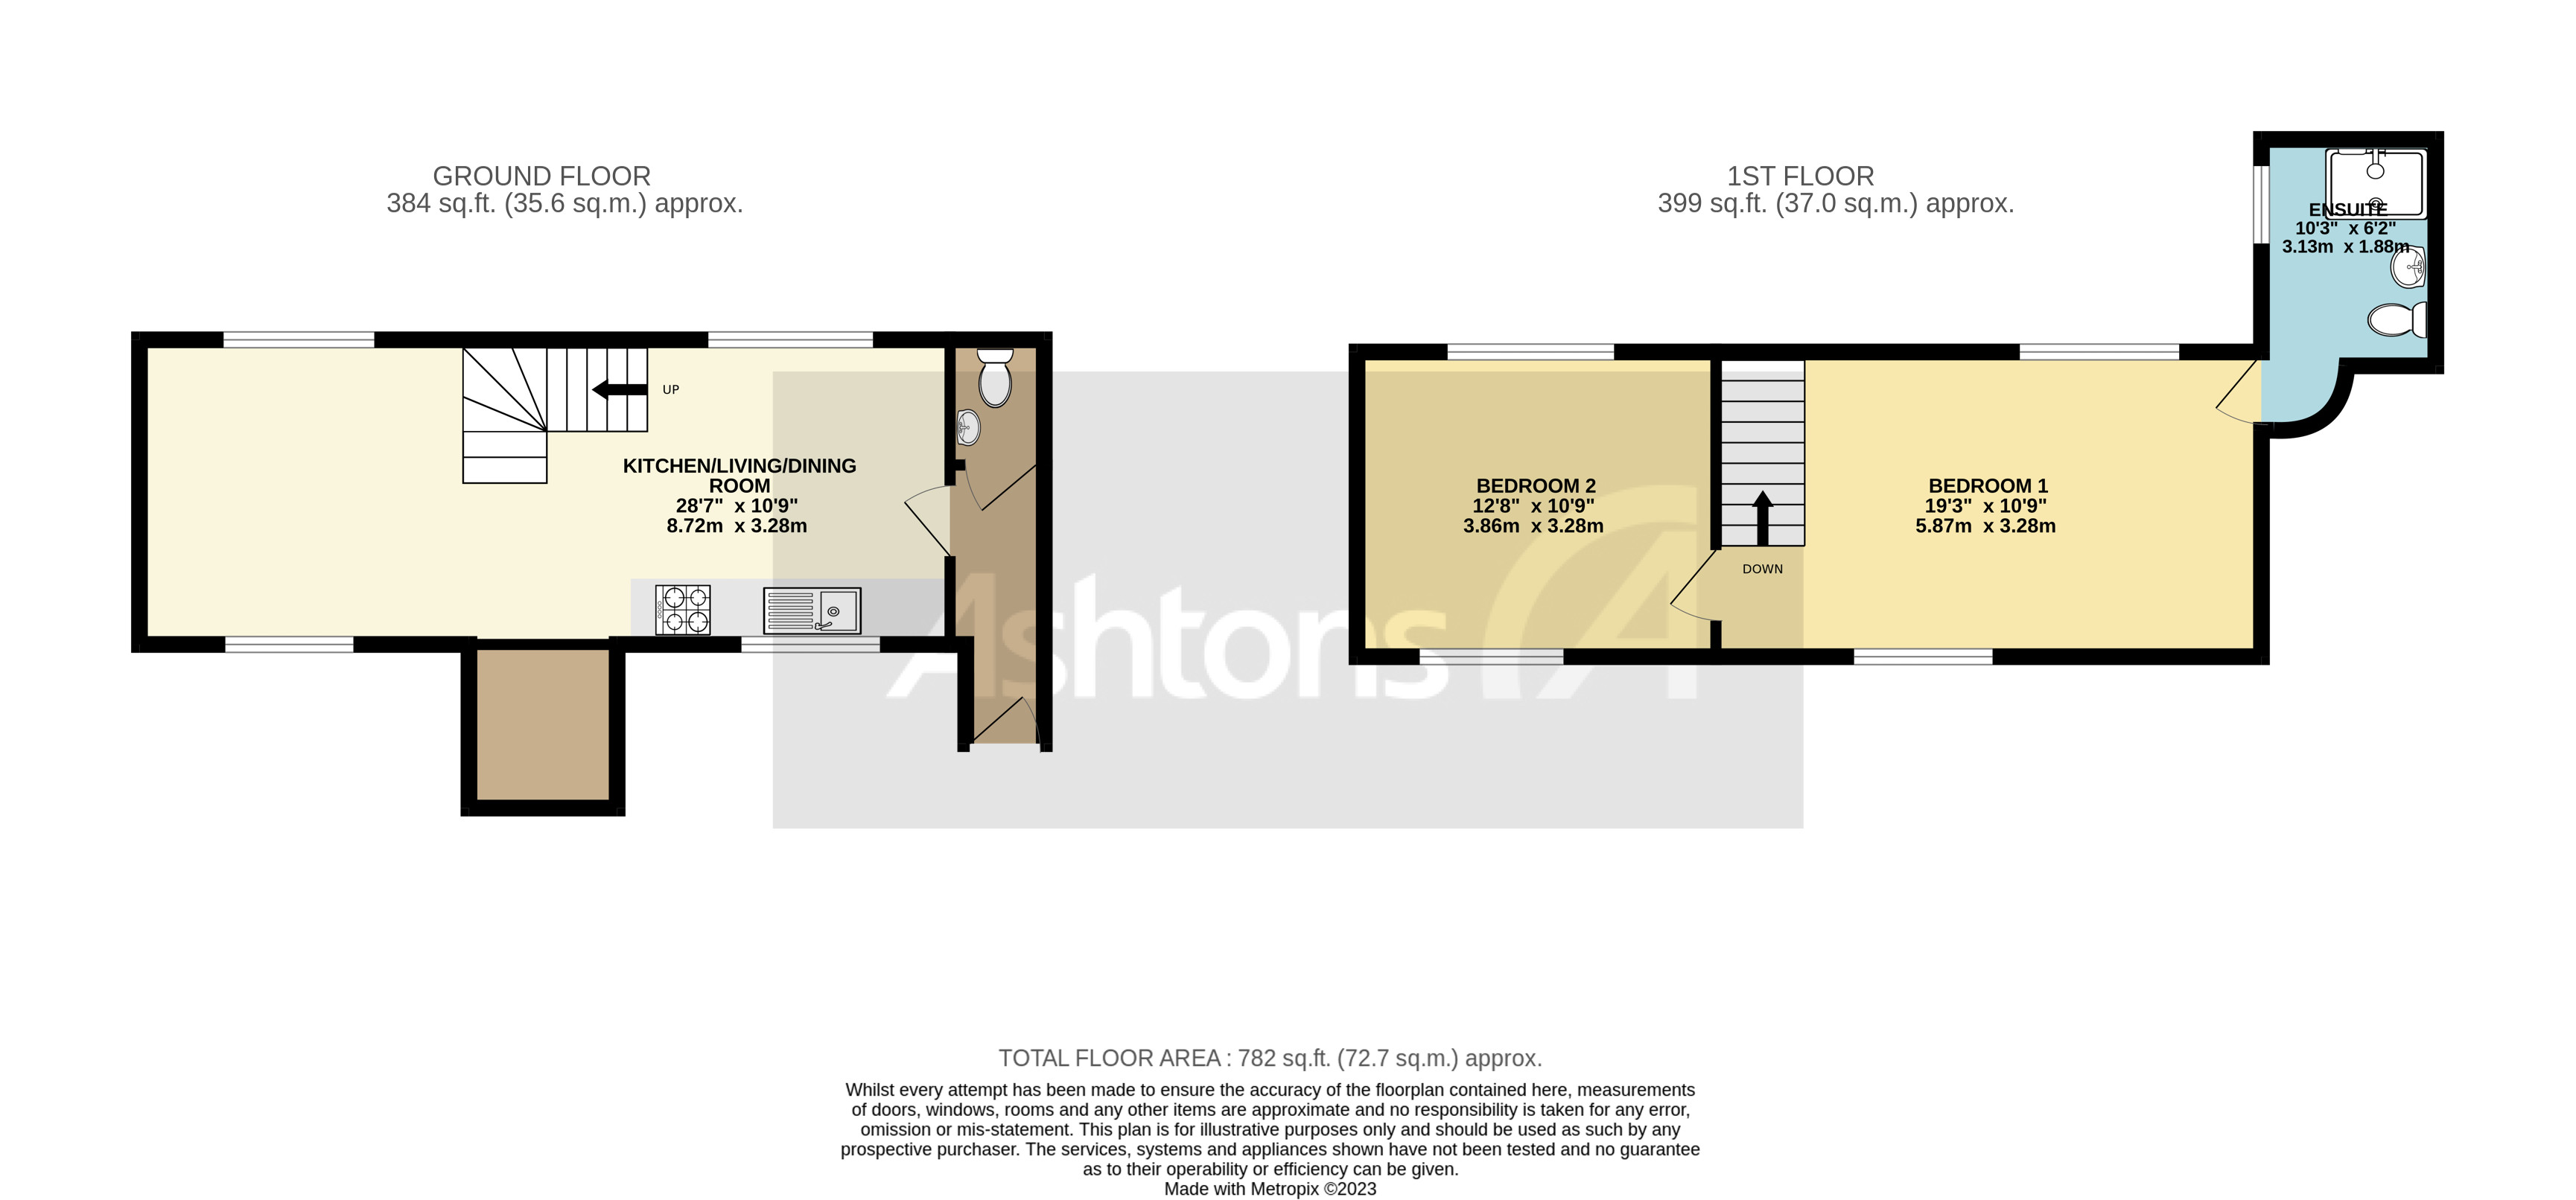 Heron Cottage Hobb Lane, Warrington Floor Plan